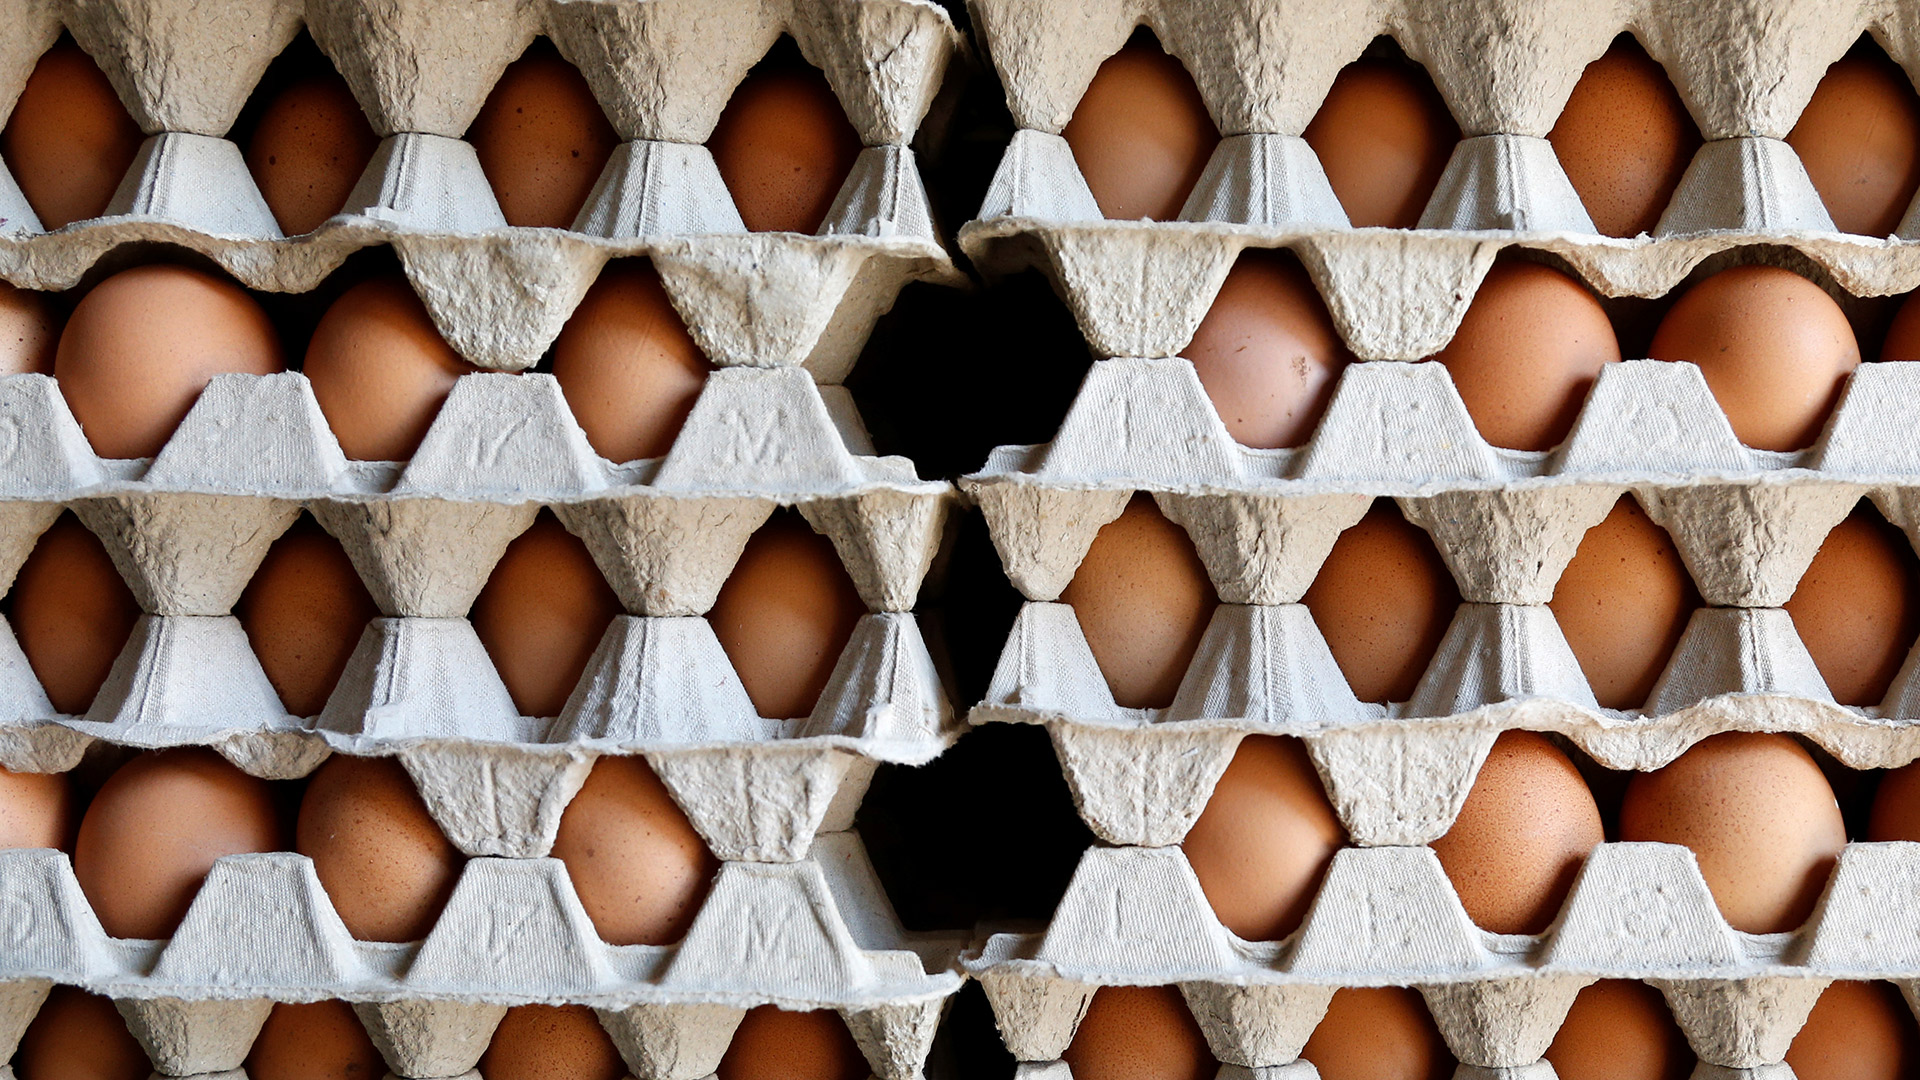 Francia confirma que ha recibido huevos contaminados de Países Bajos